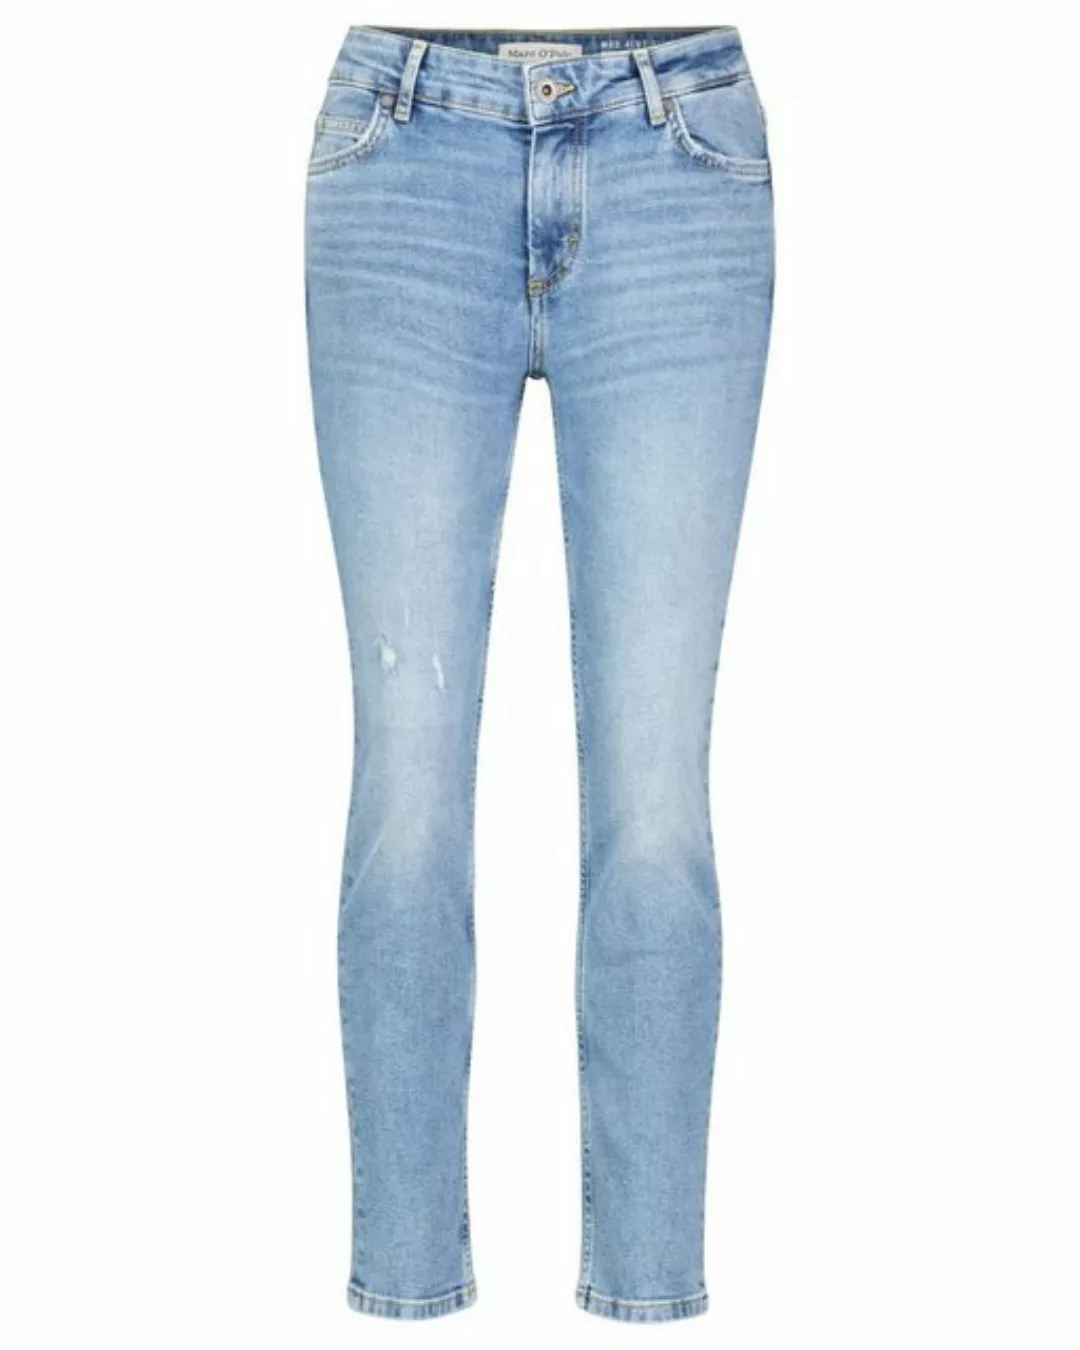 Marc O'Polo 5-Pocket-Jeans Denim trouser, boyfriend fit, cropp günstig online kaufen